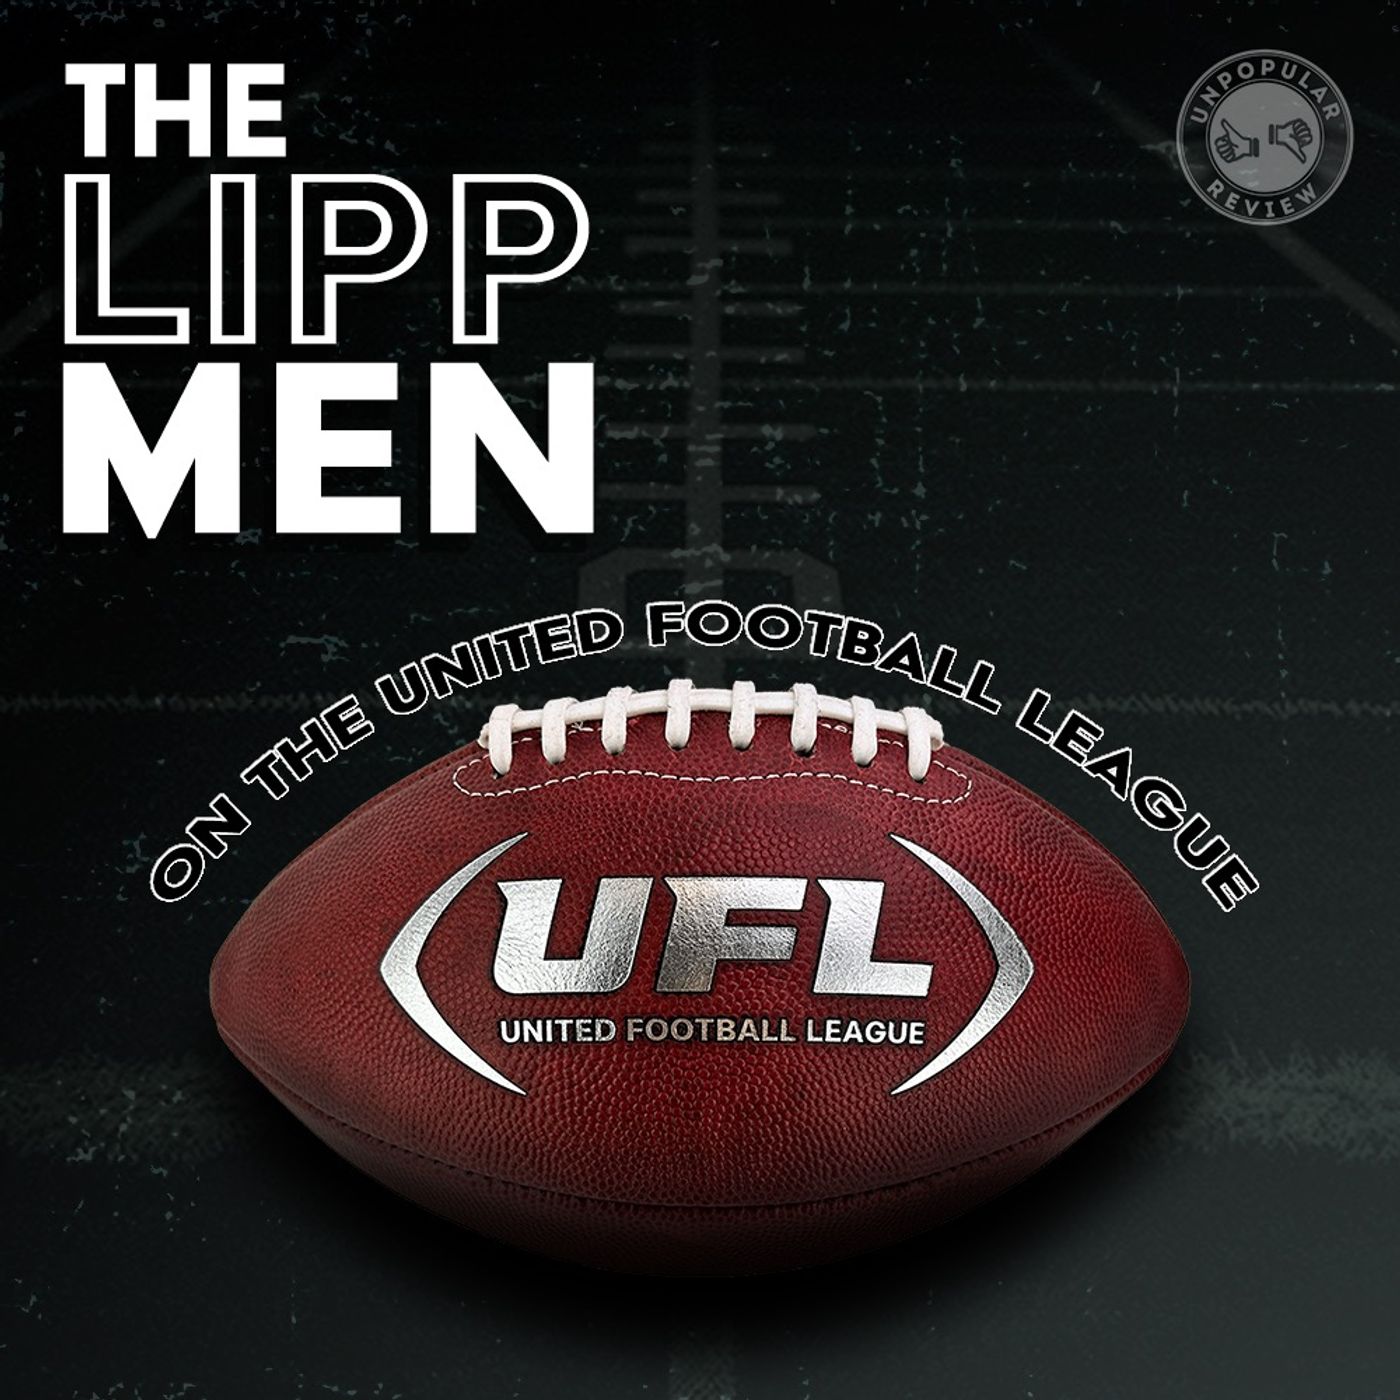 Lipp Men on the UFL E.3 USFL Division